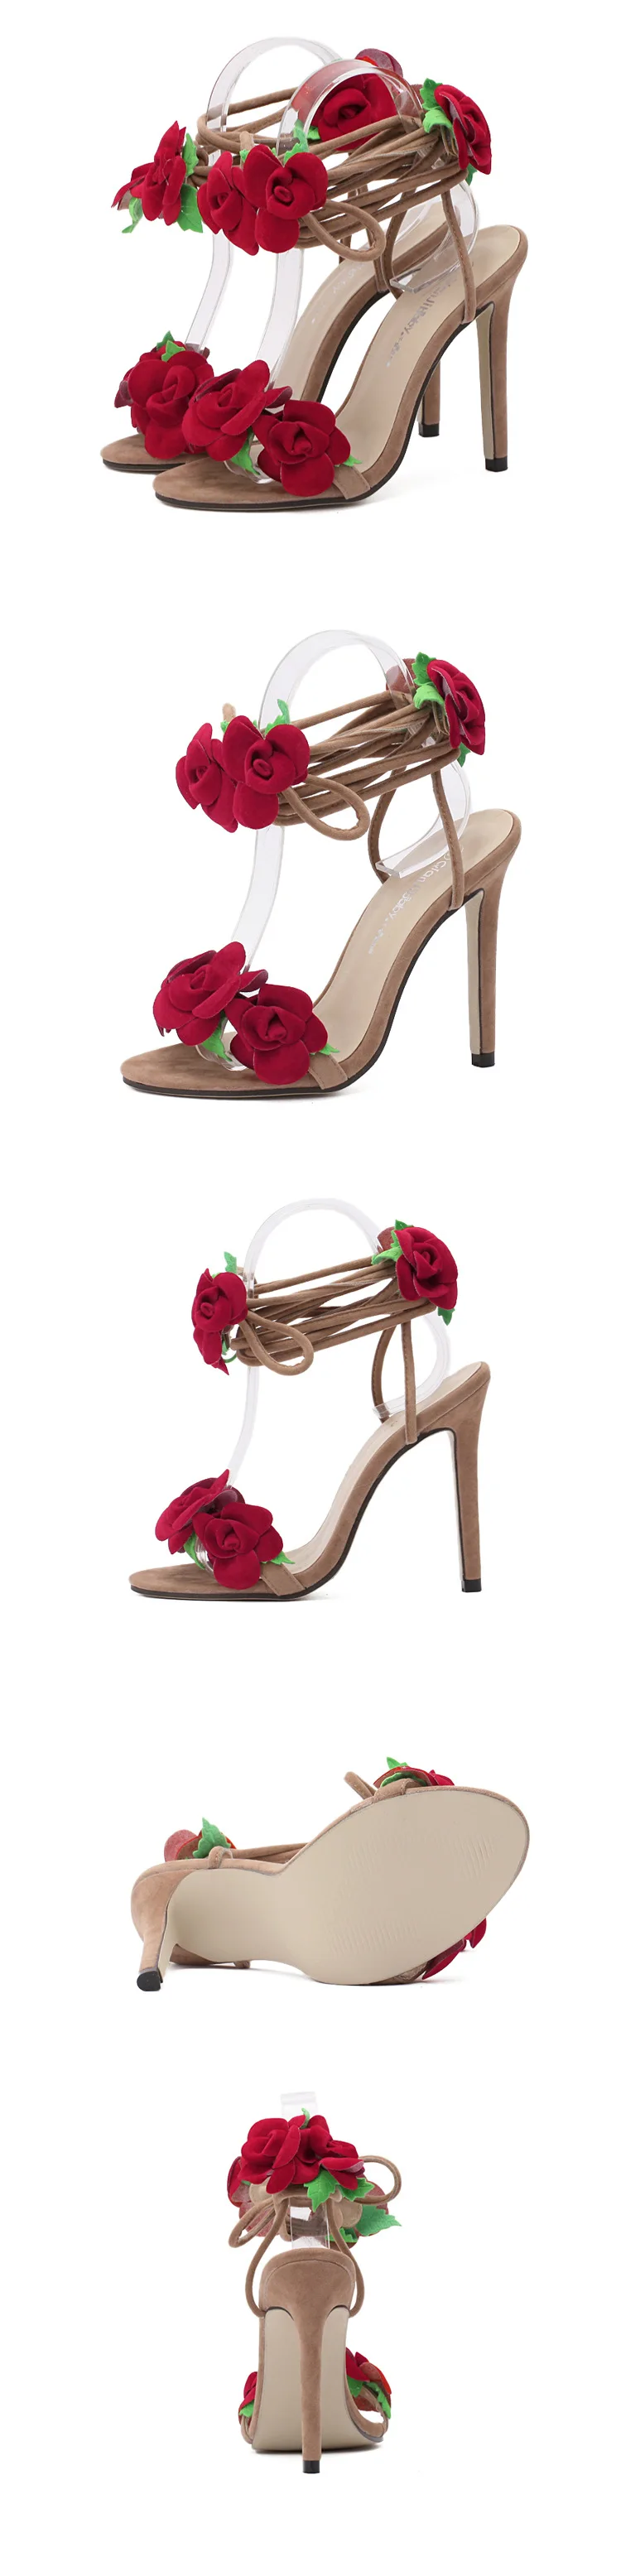 Koovan/женские босоножки г. Новые сандалии с цветами обувь на высоком каблуке с красным крест с цветами розы пикантная женская обувь, размер 42